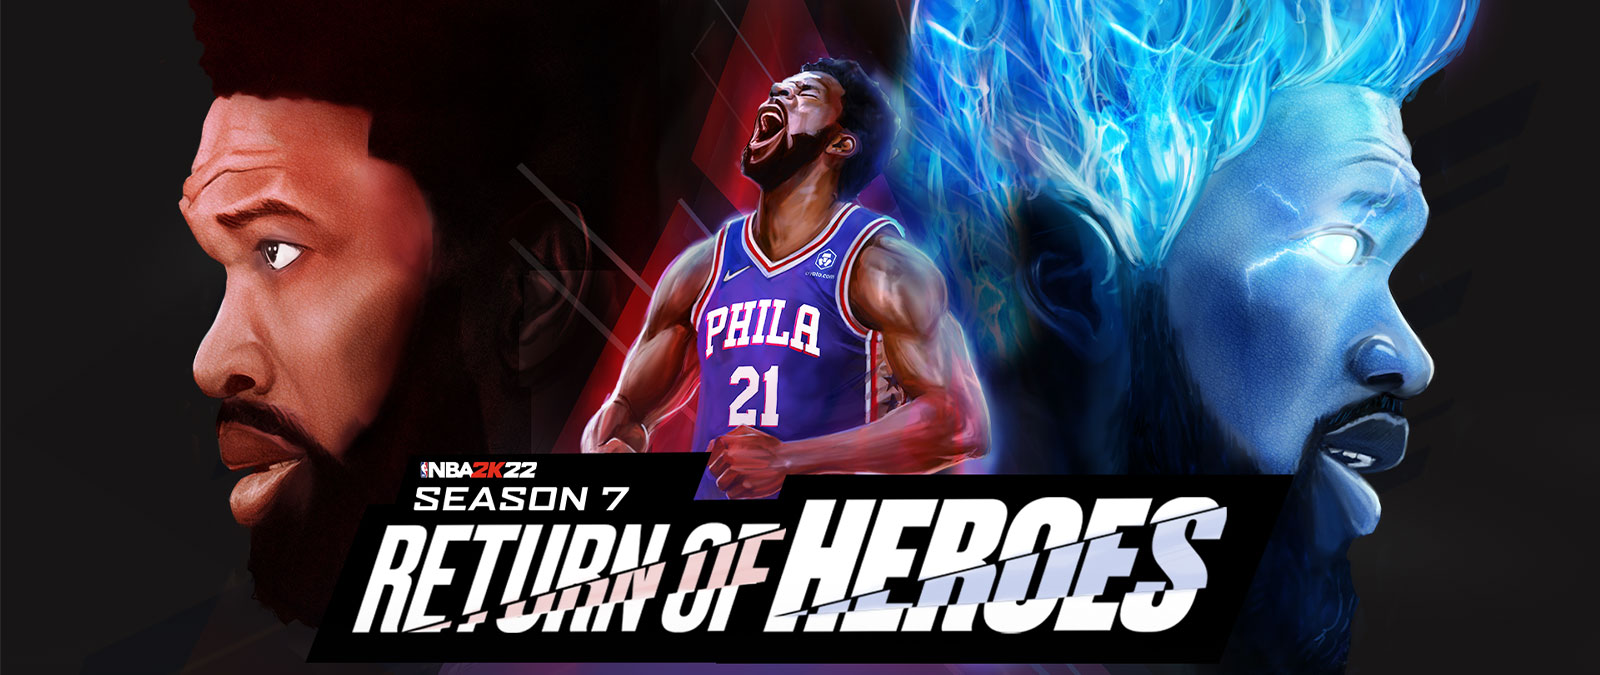 NBA 2K22, Season 7: Return of Heros, hráč týmu Philadelphia křičí do nebe a vzplane modrými plameny.